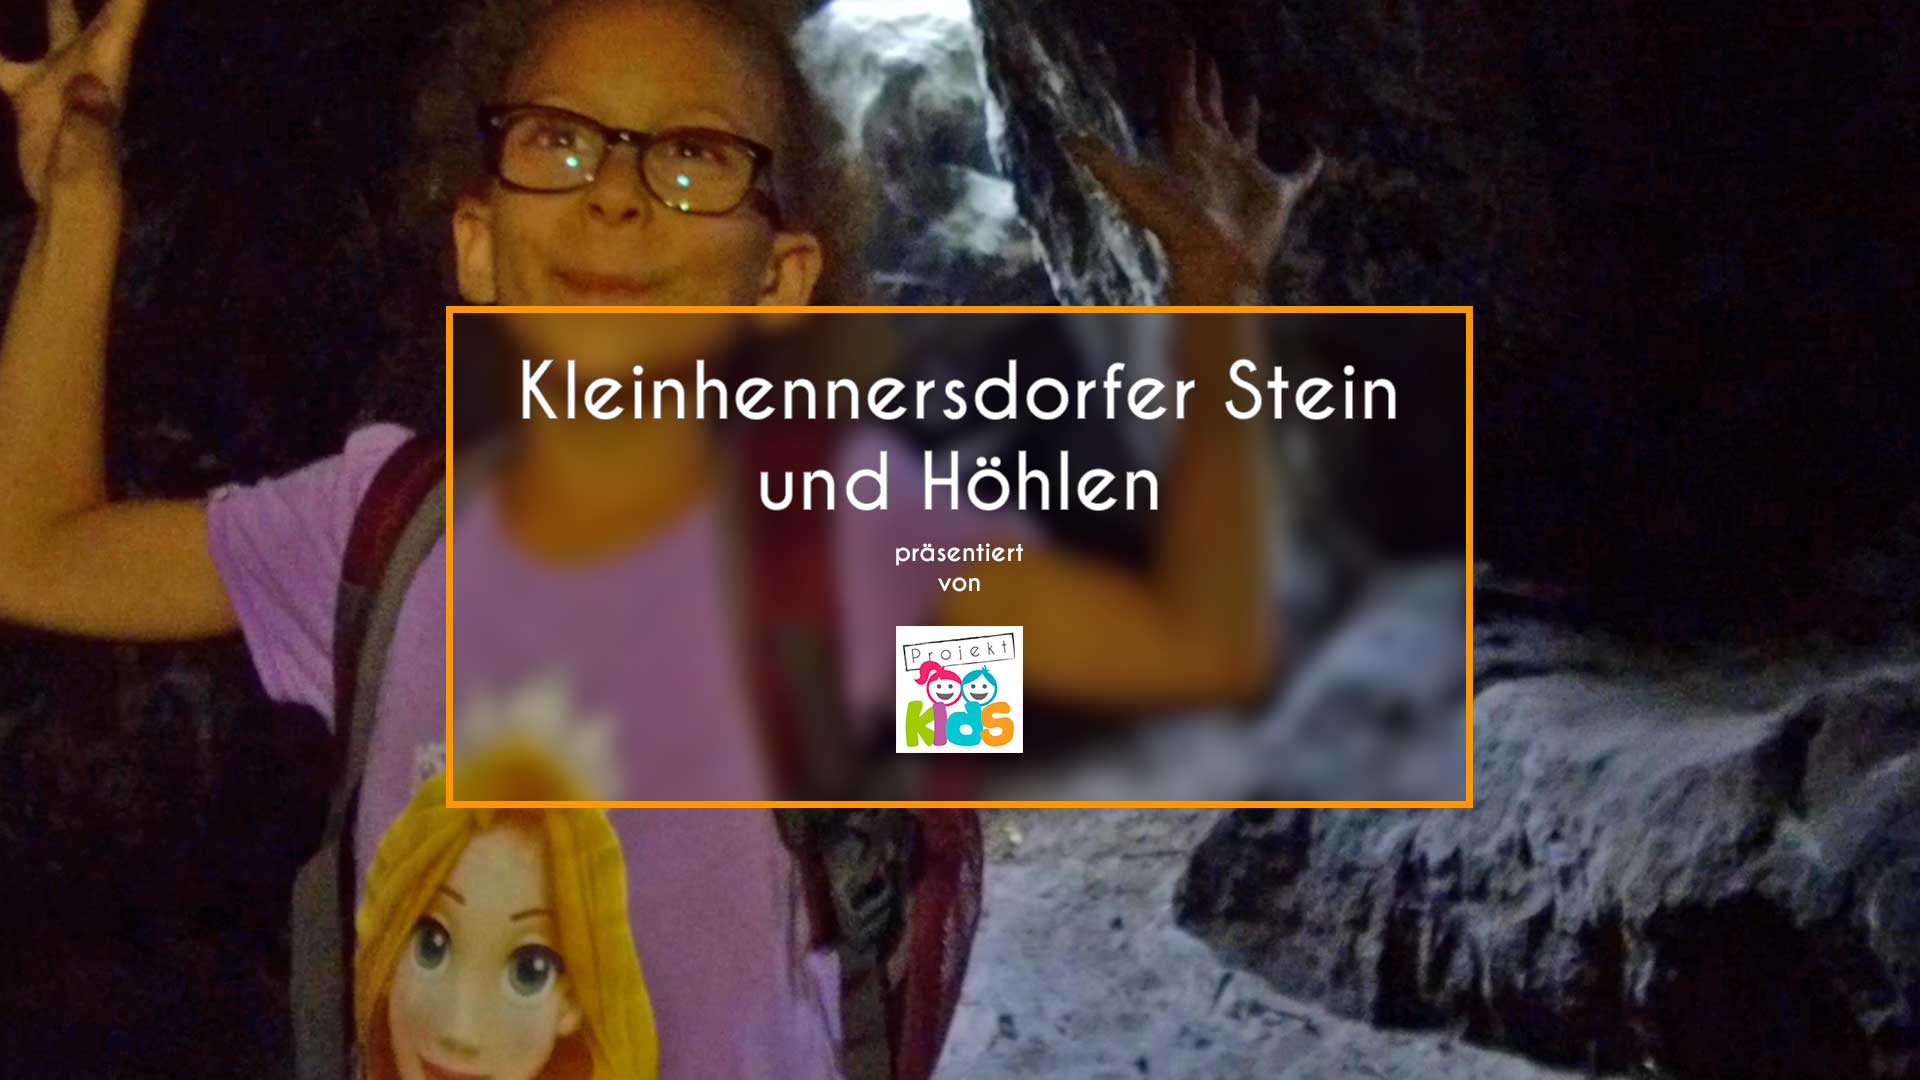 Video - Kleinhennersdorfer Stein und Höhlen